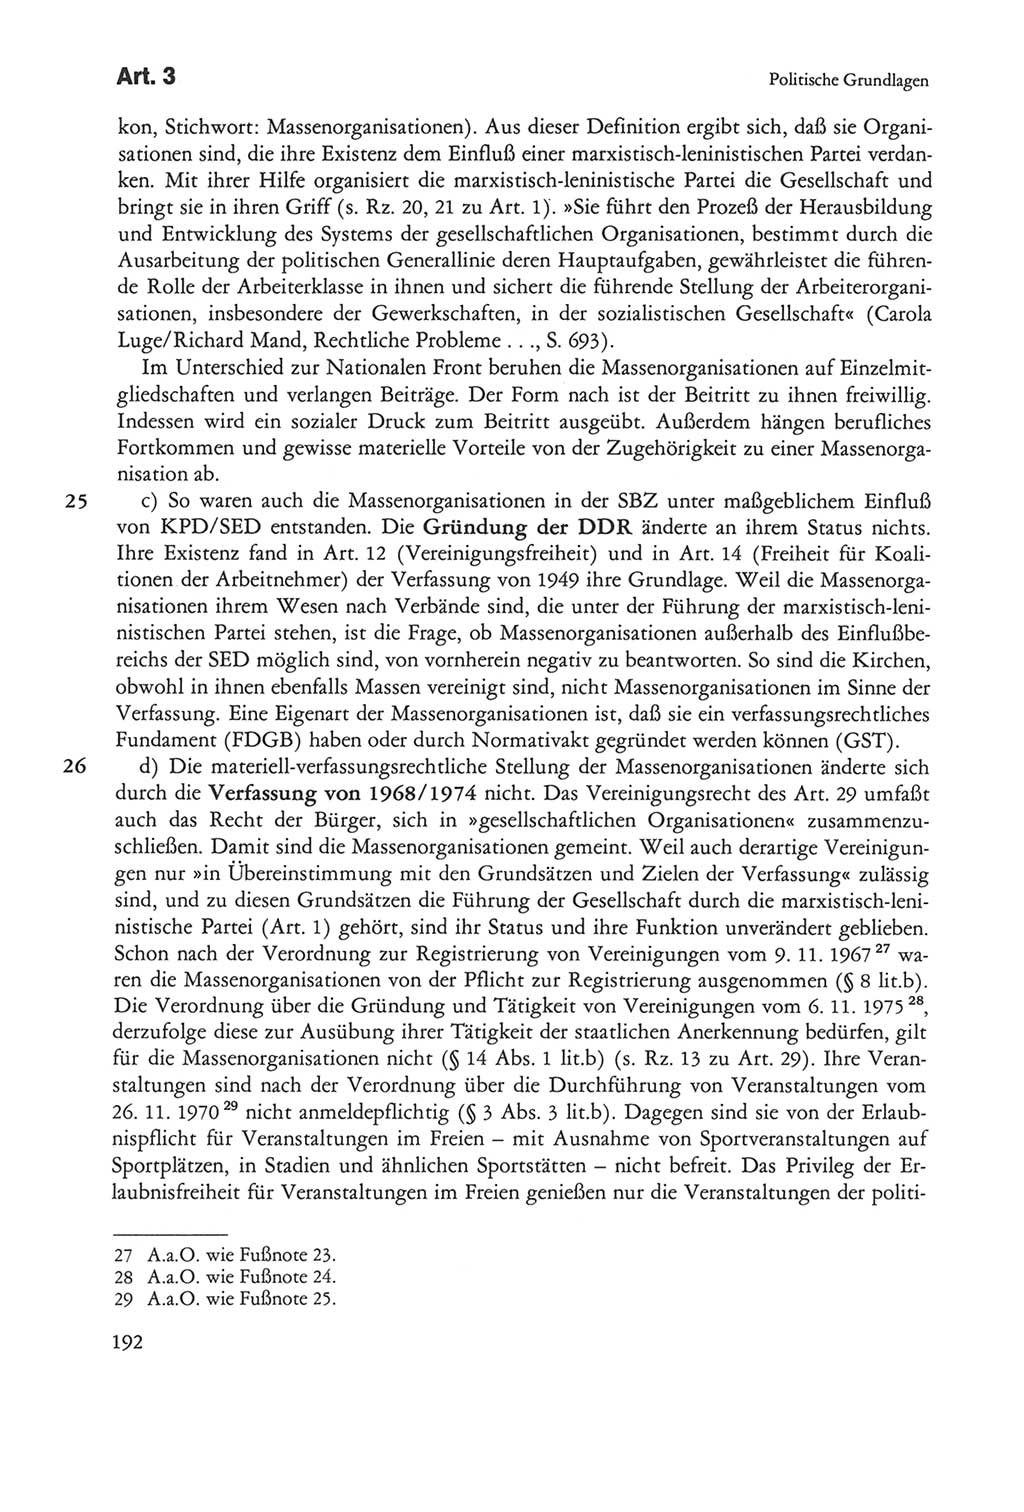 Die sozialistische Verfassung der Deutschen Demokratischen Republik (DDR), Kommentar mit einem Nachtrag 1997, Seite 192 (Soz. Verf. DDR Komm. Nachtr. 1997, S. 192)